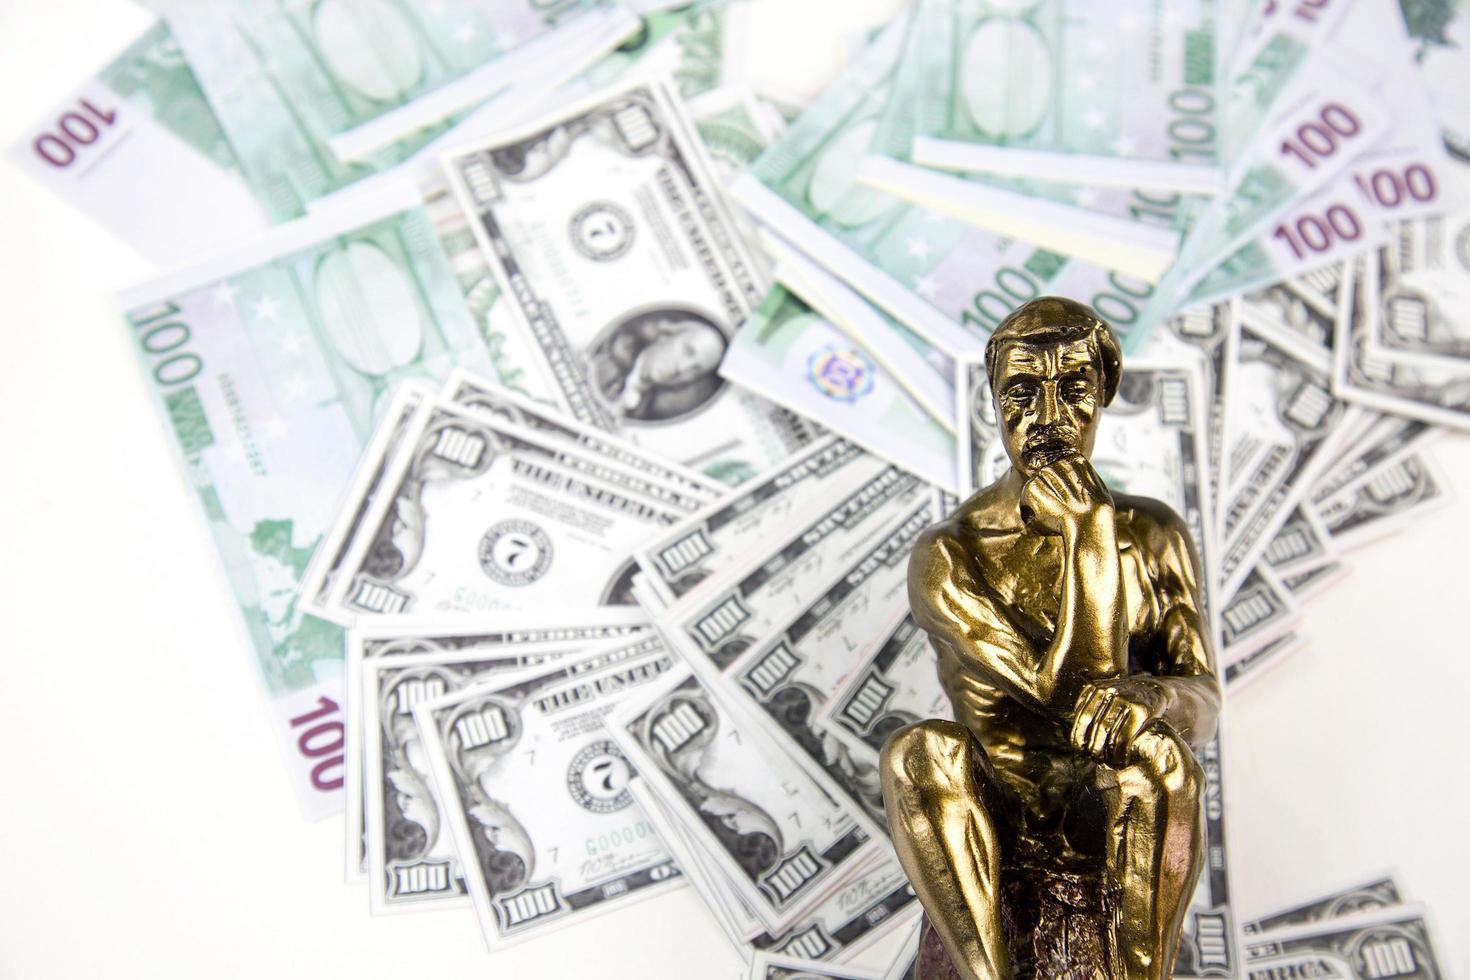 dinero en efectivo finanzas y pensamiento hombre musculoso estatua foto